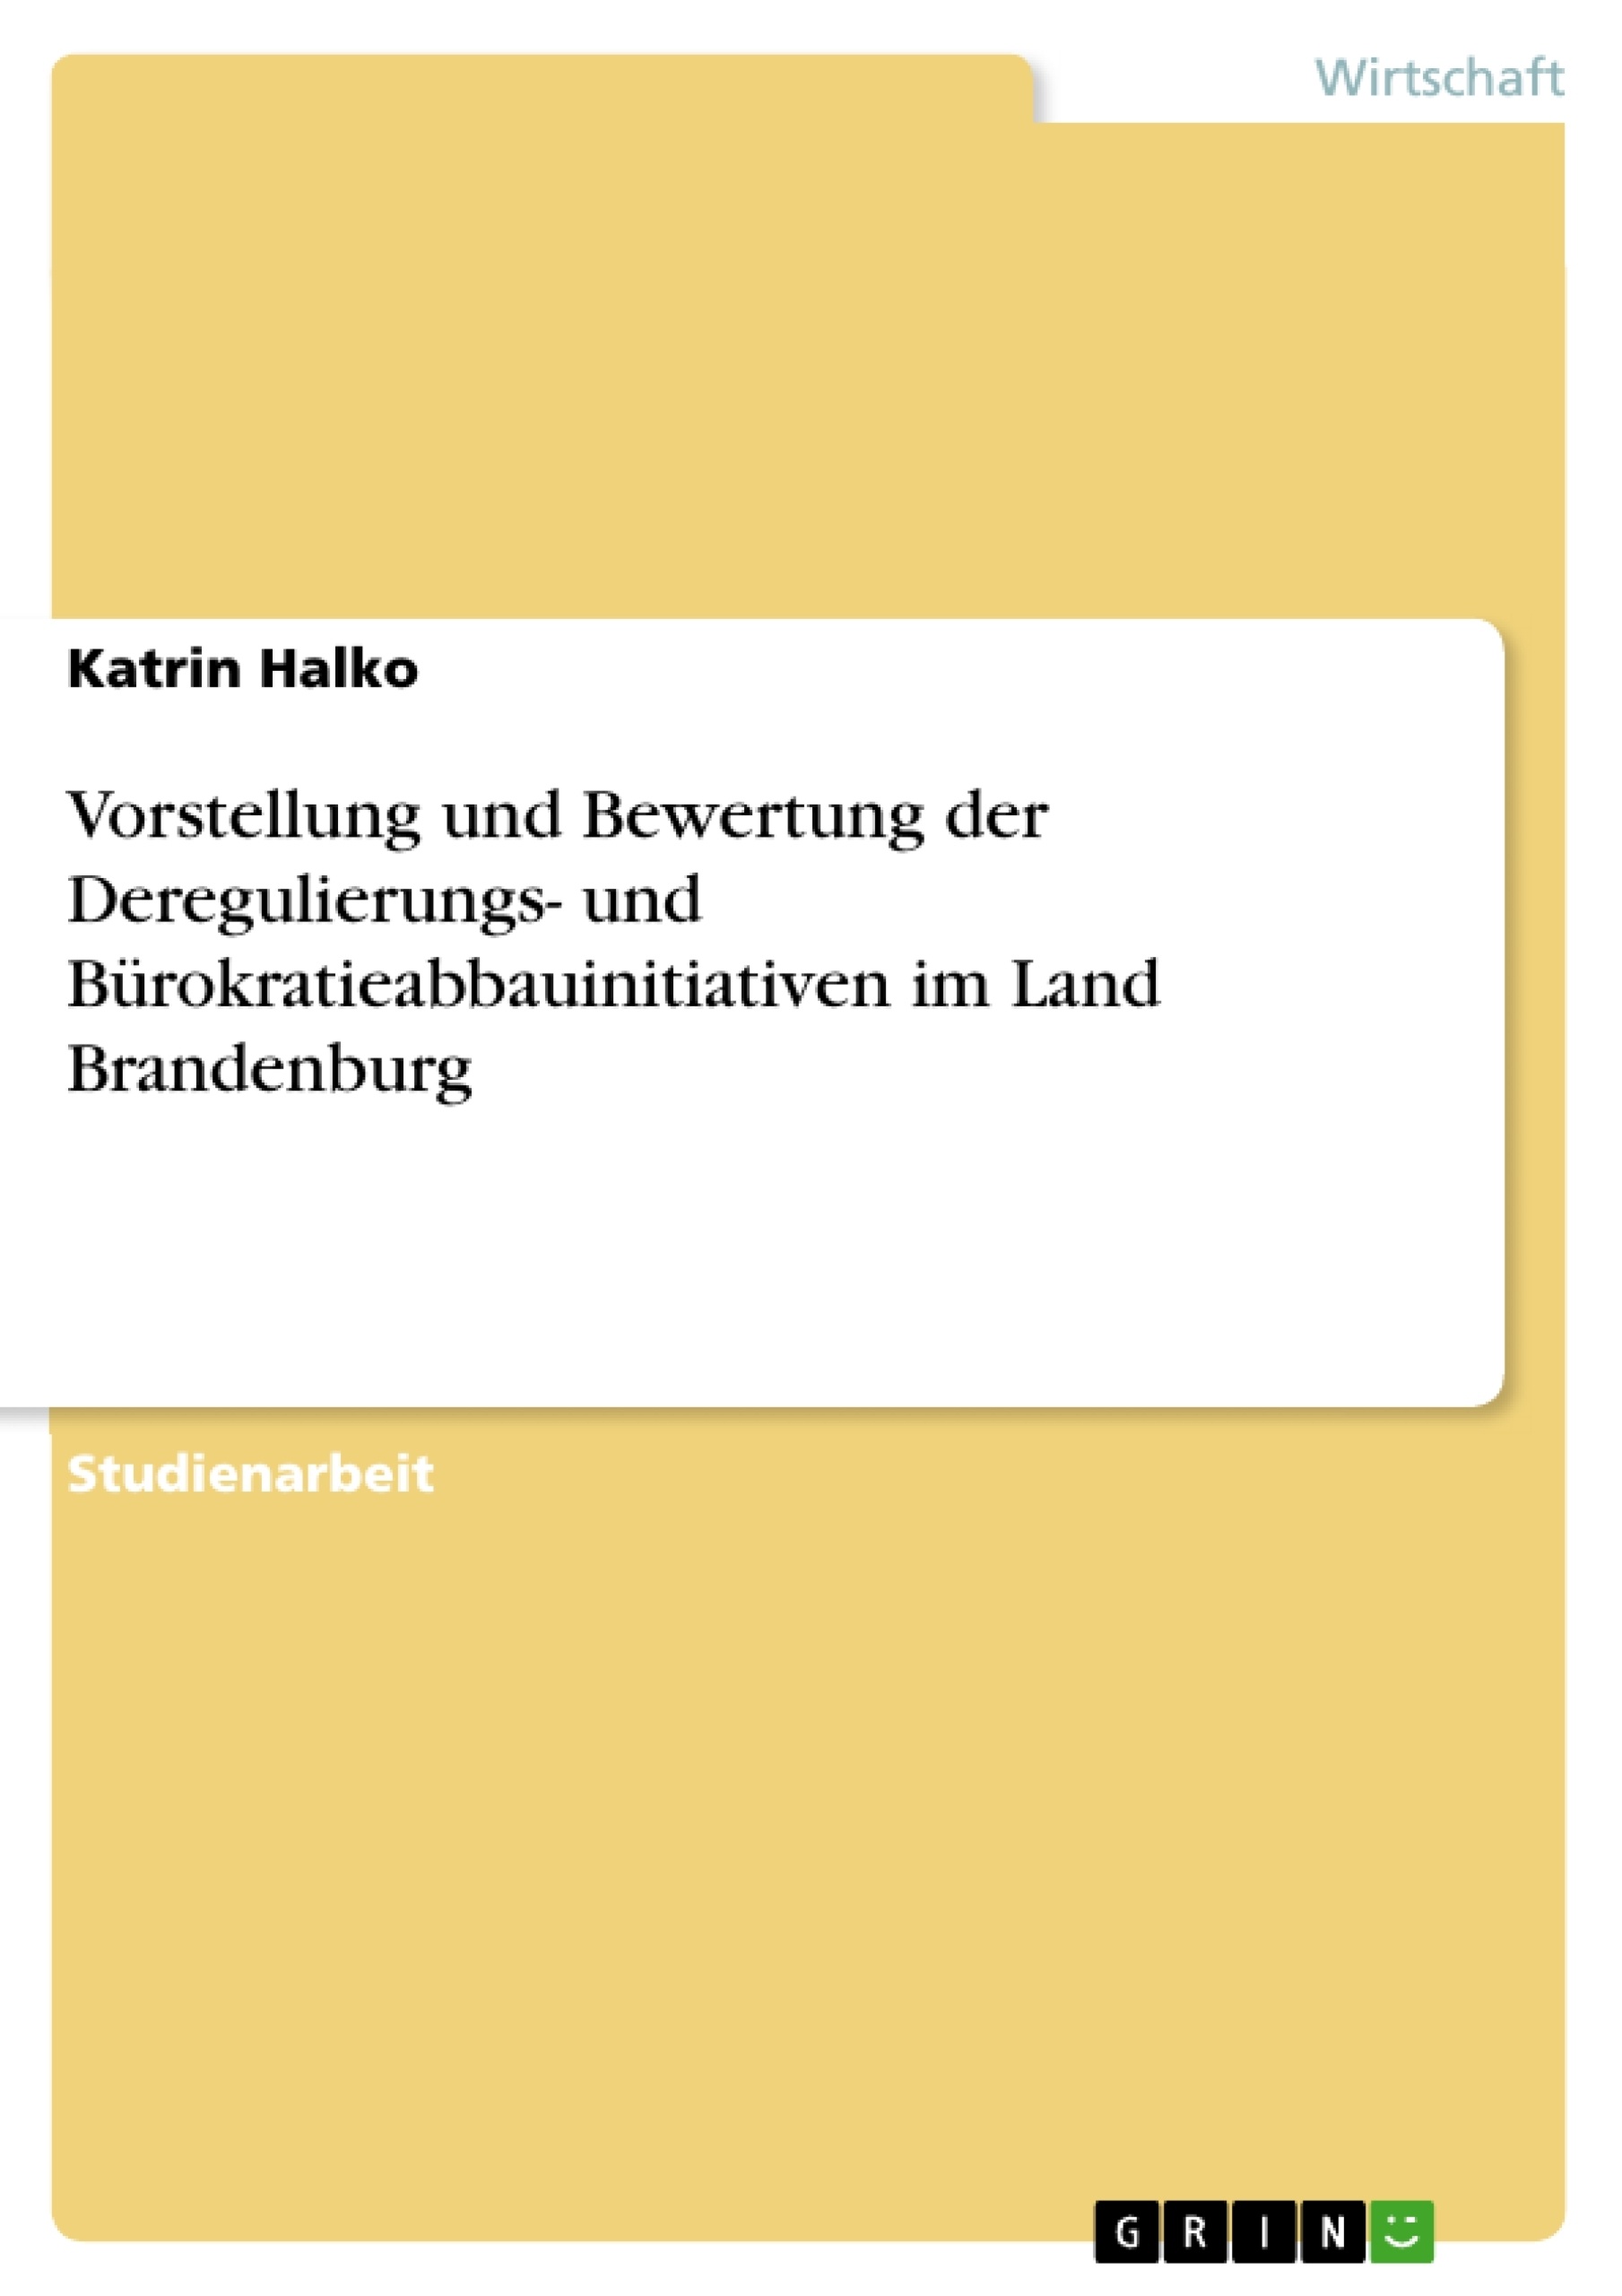 Titel: Vorstellung und Bewertung der Deregulierungs- und Bürokratieabbauinitiativen im Land Brandenburg